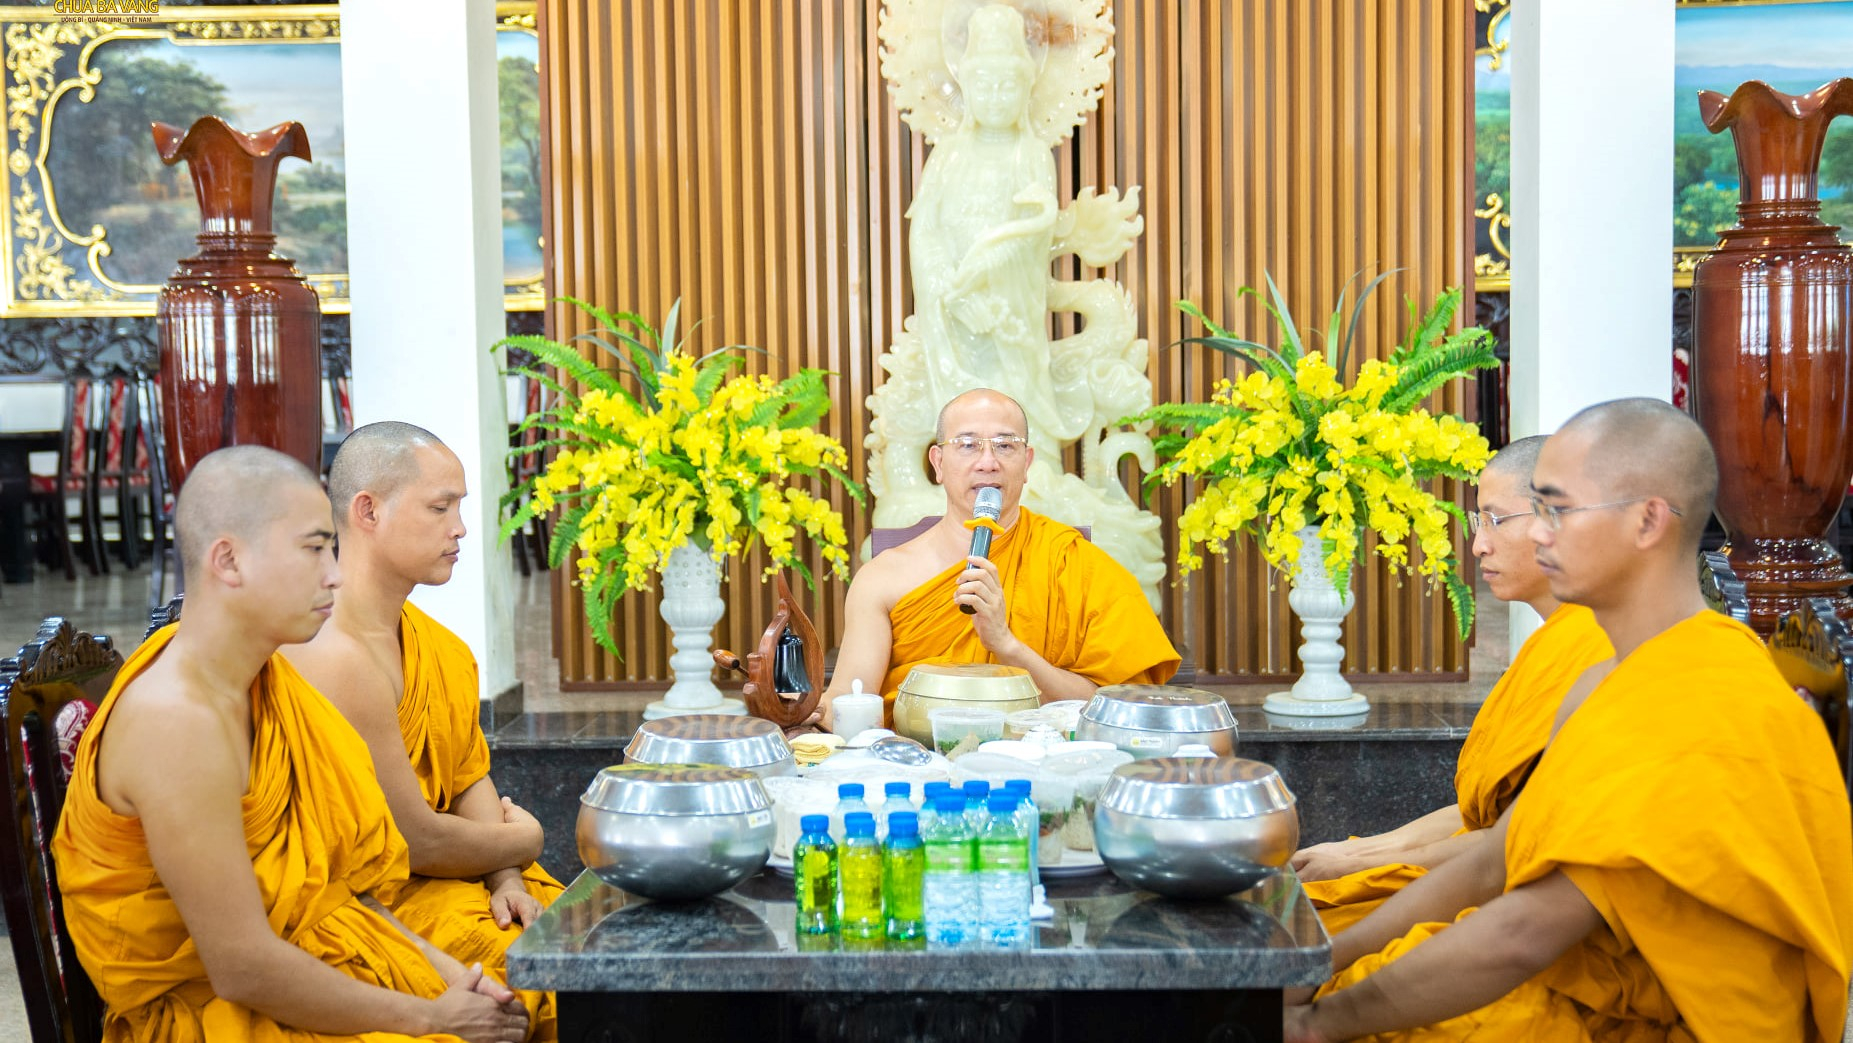 Đón nhận tấm lòng của các Phật tử, Sư Phụ đã ban những lời đạo từ đầy ý nghĩa, chỉ dạy thêm cho các Phật tử về tâm biết ơn và đền ơn